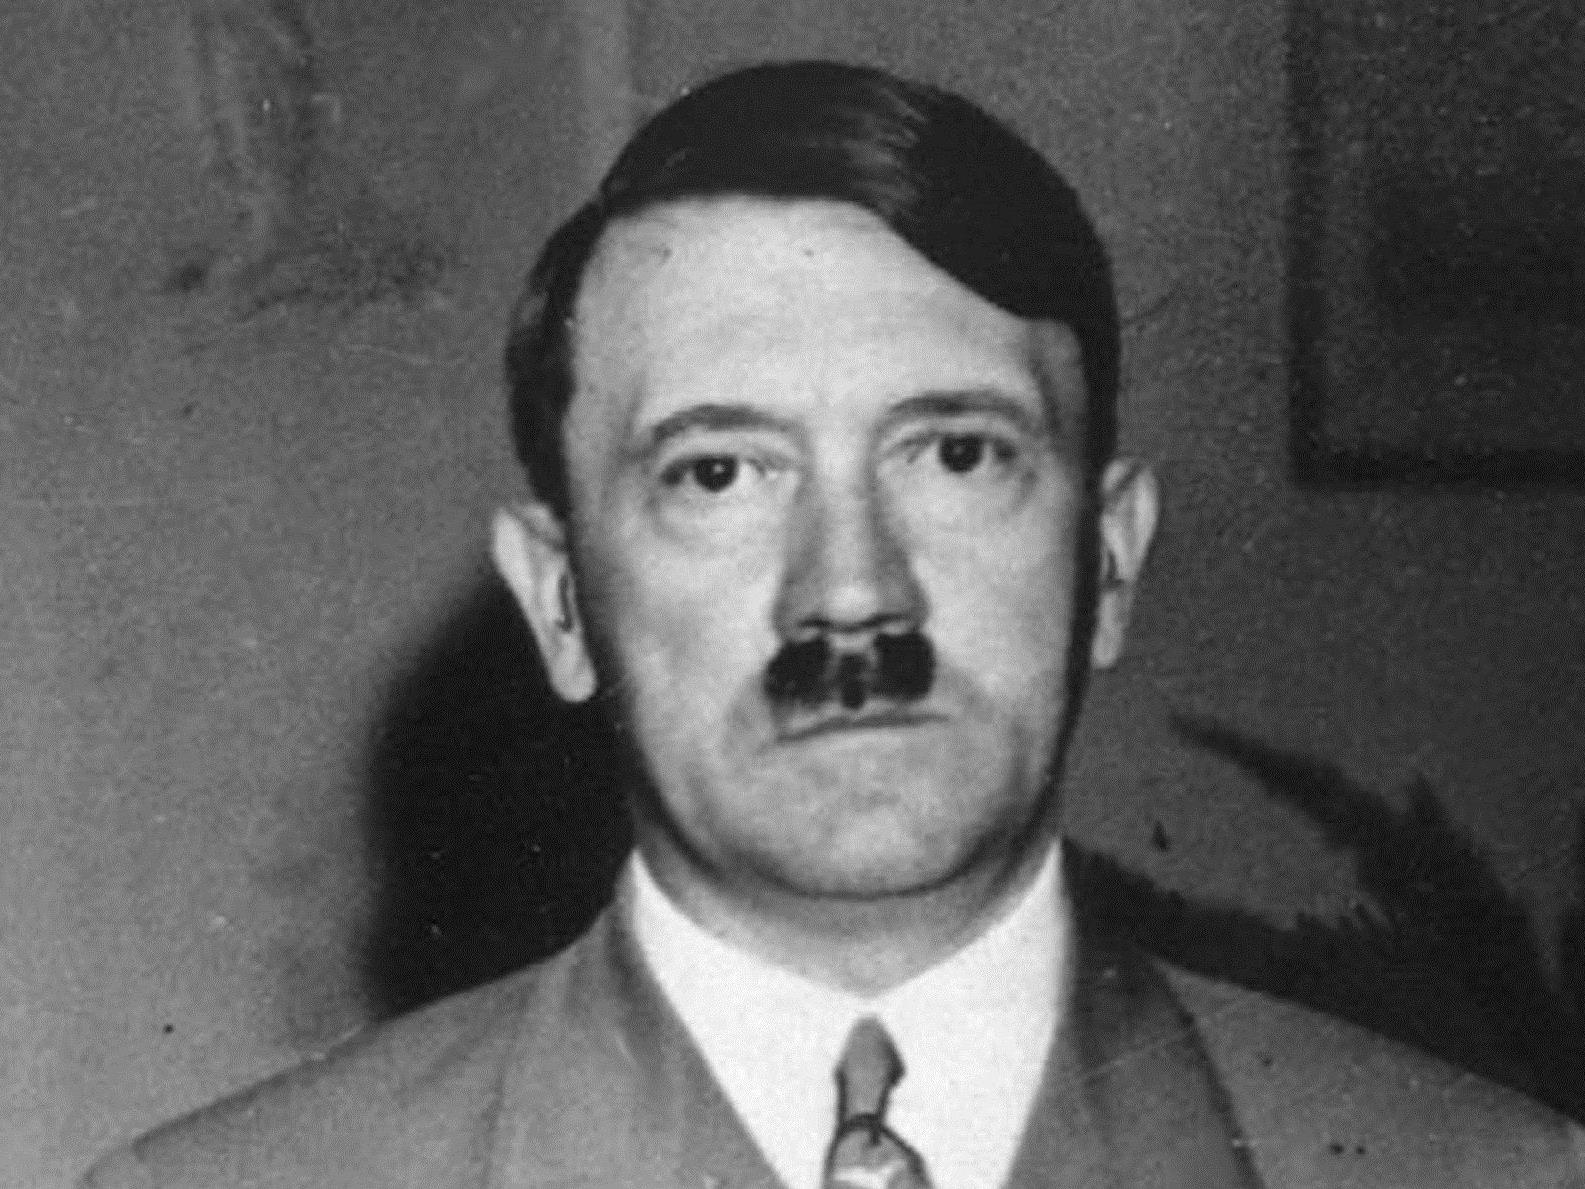 Anscheinend sei das Hitler-Porträt auf der Tasse weder beim Einkauf noch beim Einräumen aufgefallen.